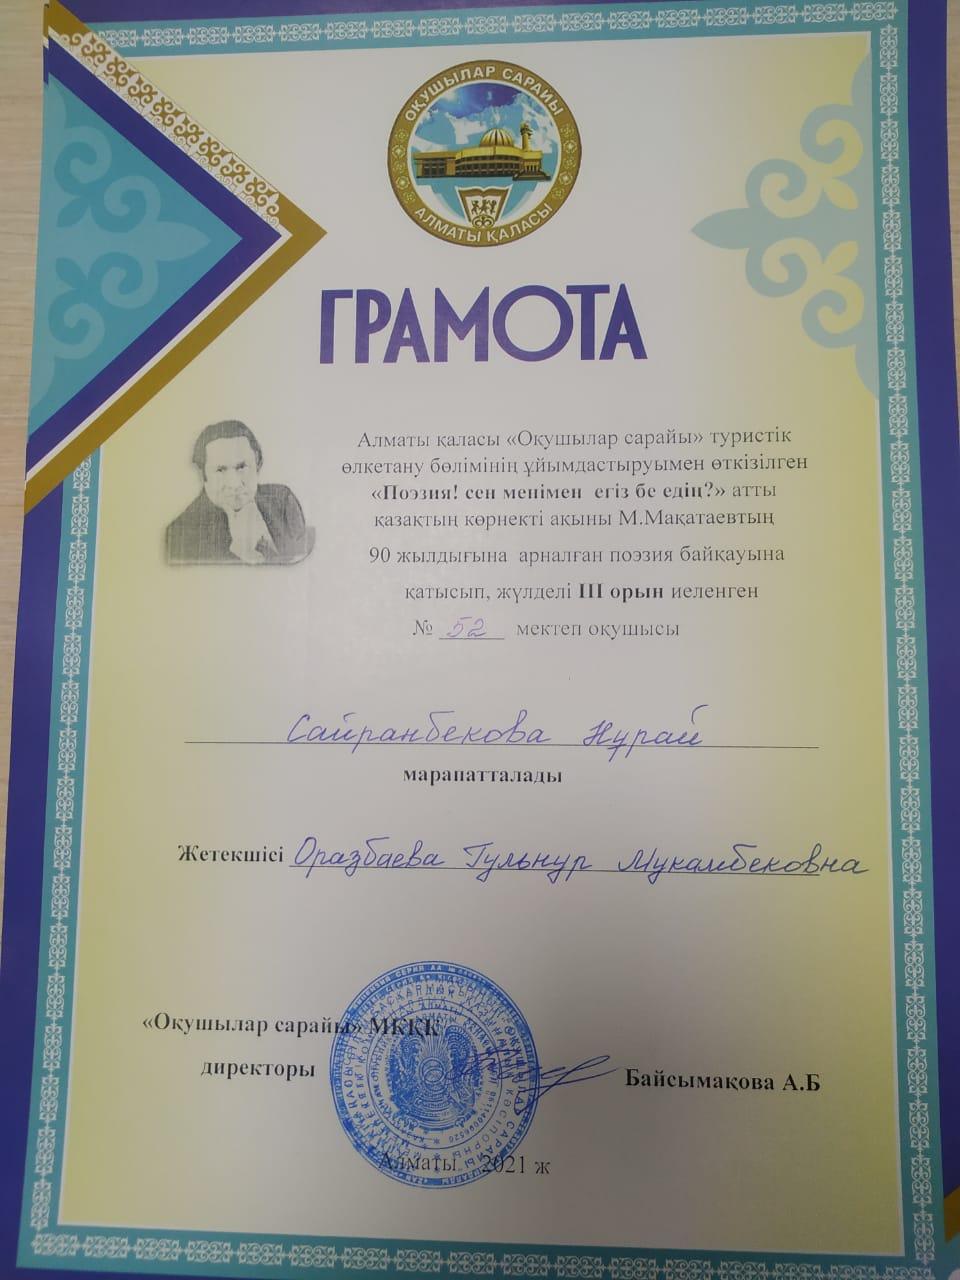 Ученица 10 класса Сайранбекова Нурай в городском конкурсе чтецов, посвящённой к 90летию Мукагали Макатаева  заняла 3 место.